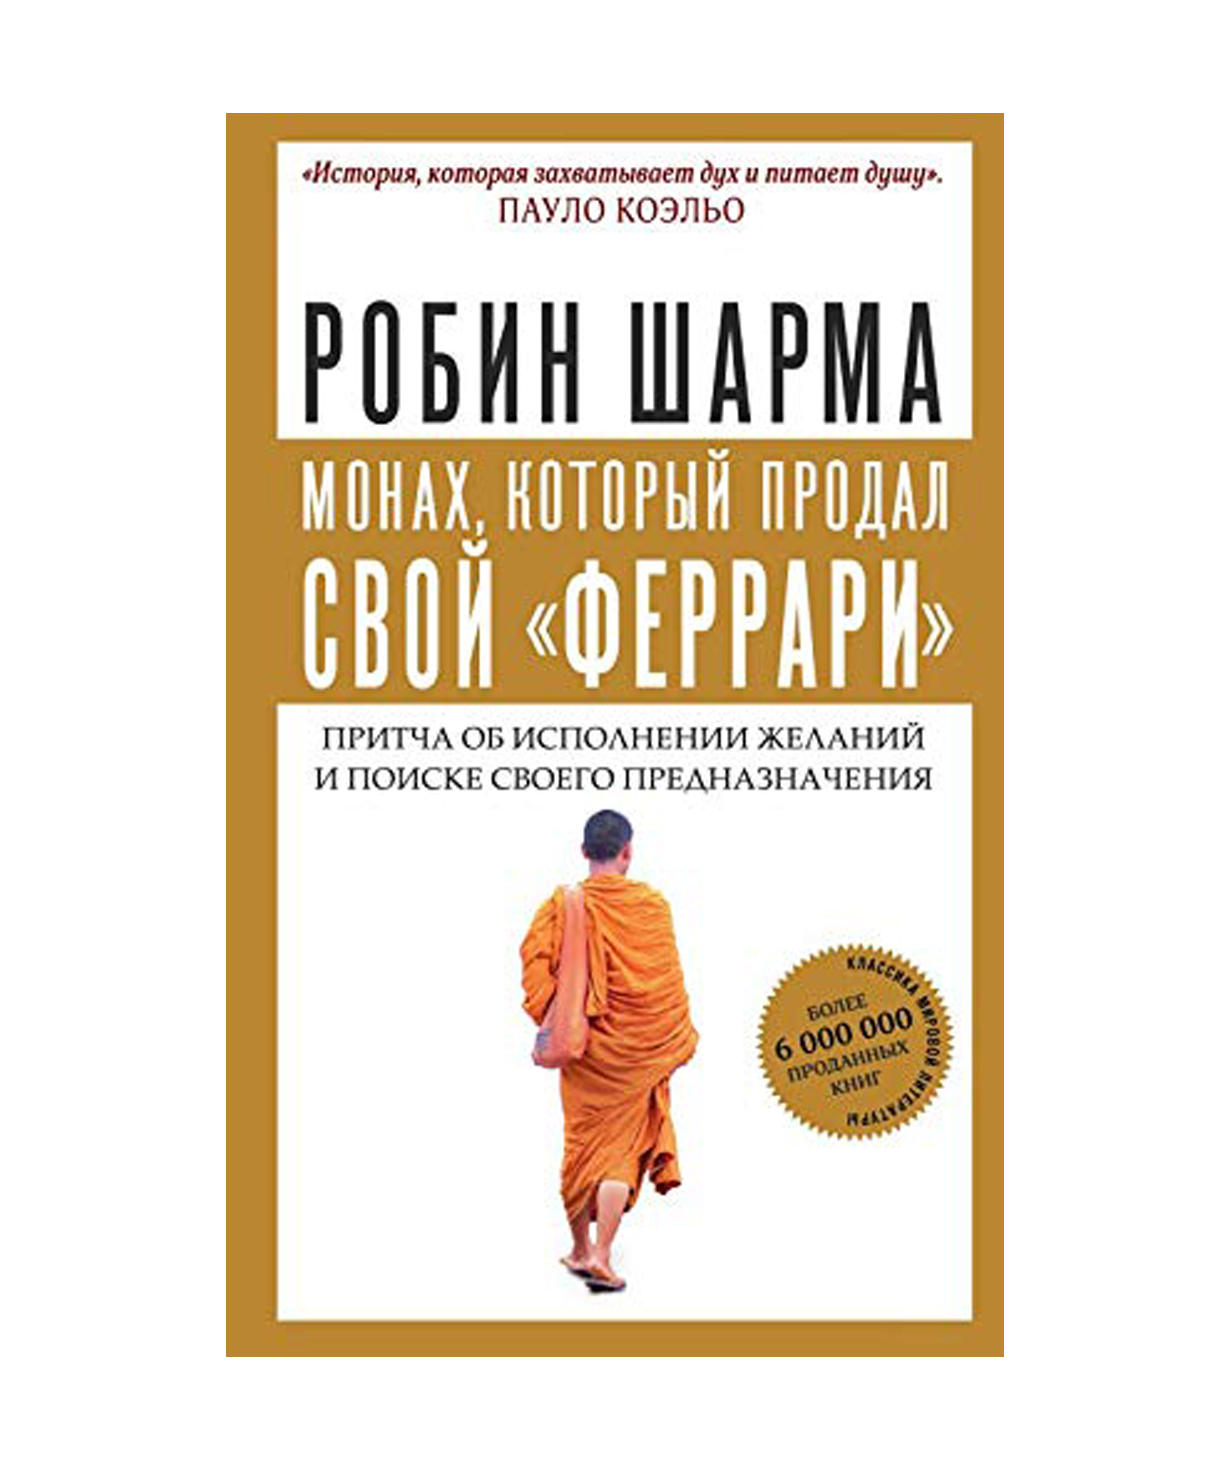 Книга «Монах, который продал свой Феррари» Робин Шарма / на русском